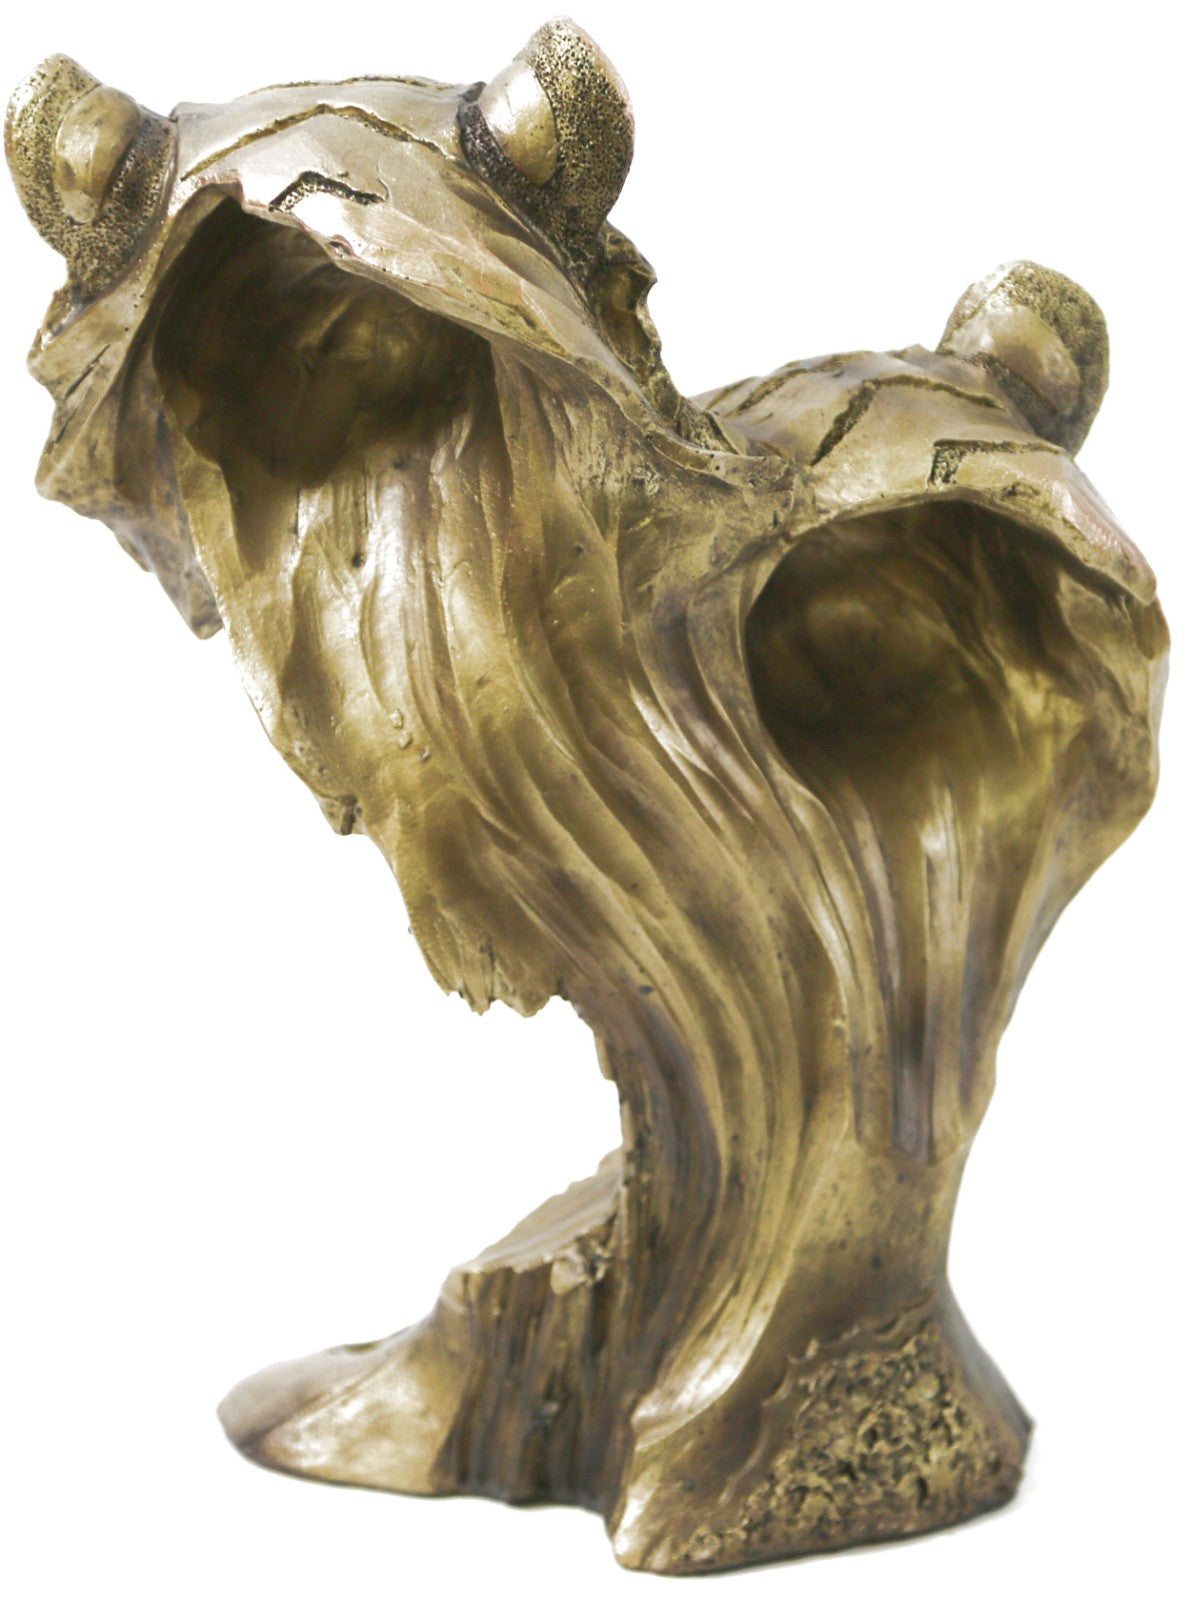 Art Deco Animal Zoo Memorabilia Lion Bust Bronze Effect Sculpture Figurine Sale